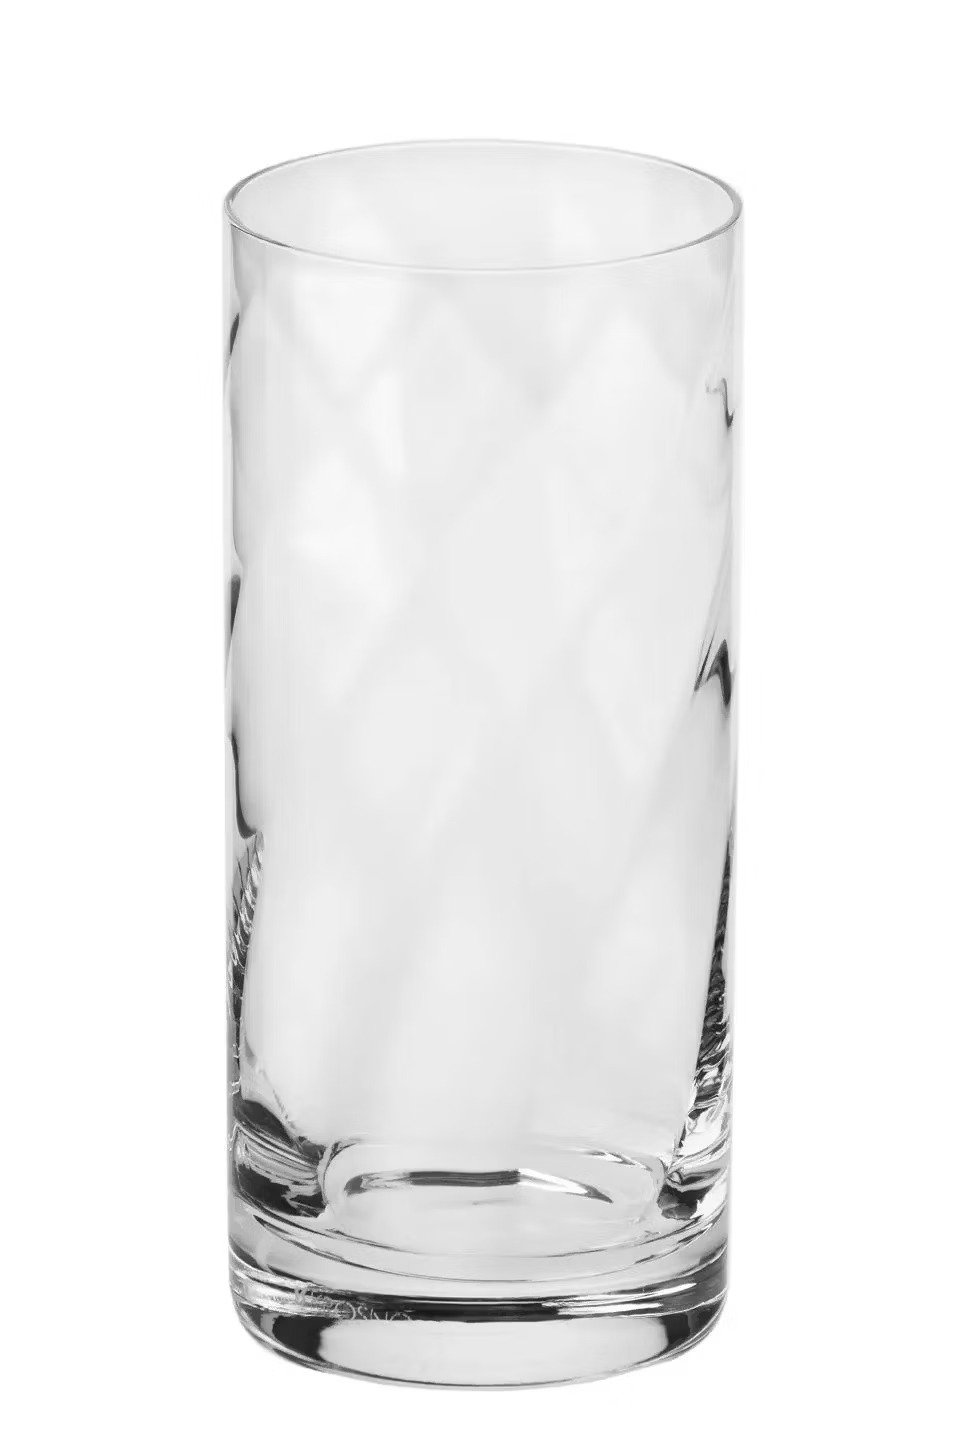 Набір високих склянок Krosno Romance, скло, 380 мл, 6 шт. (790084) - фото 3